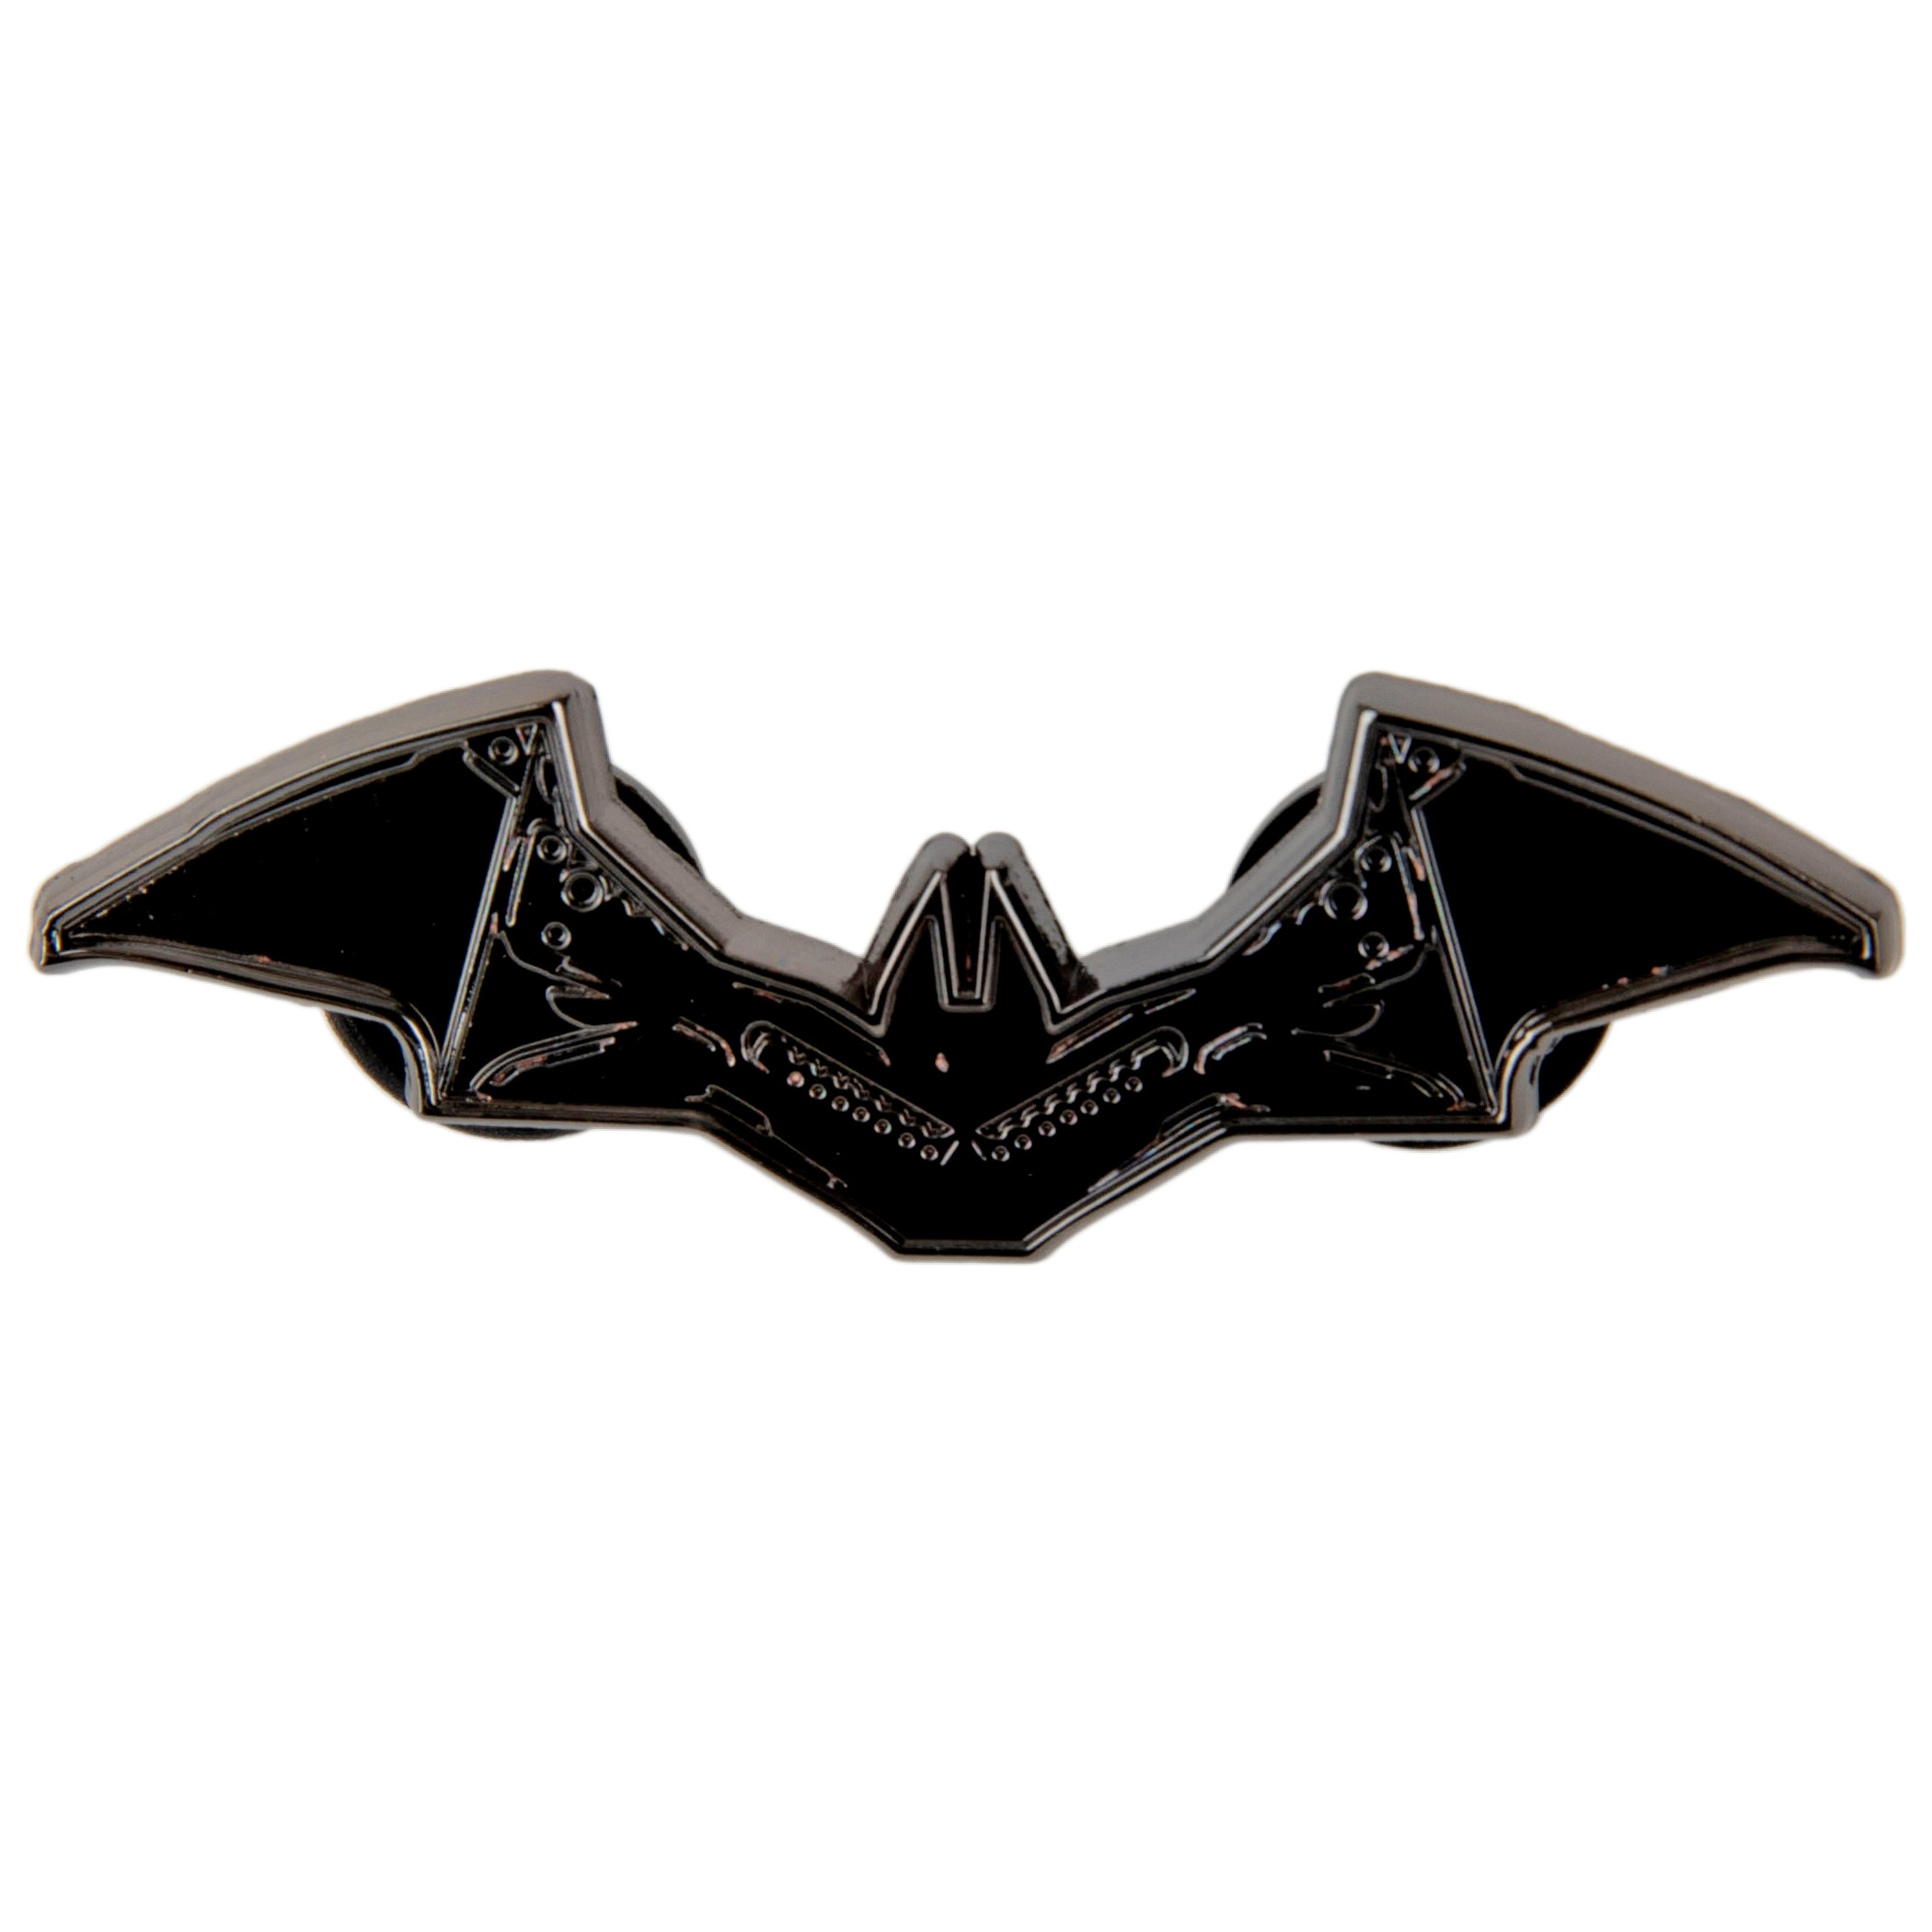 The Batman Batarang Pin Badge